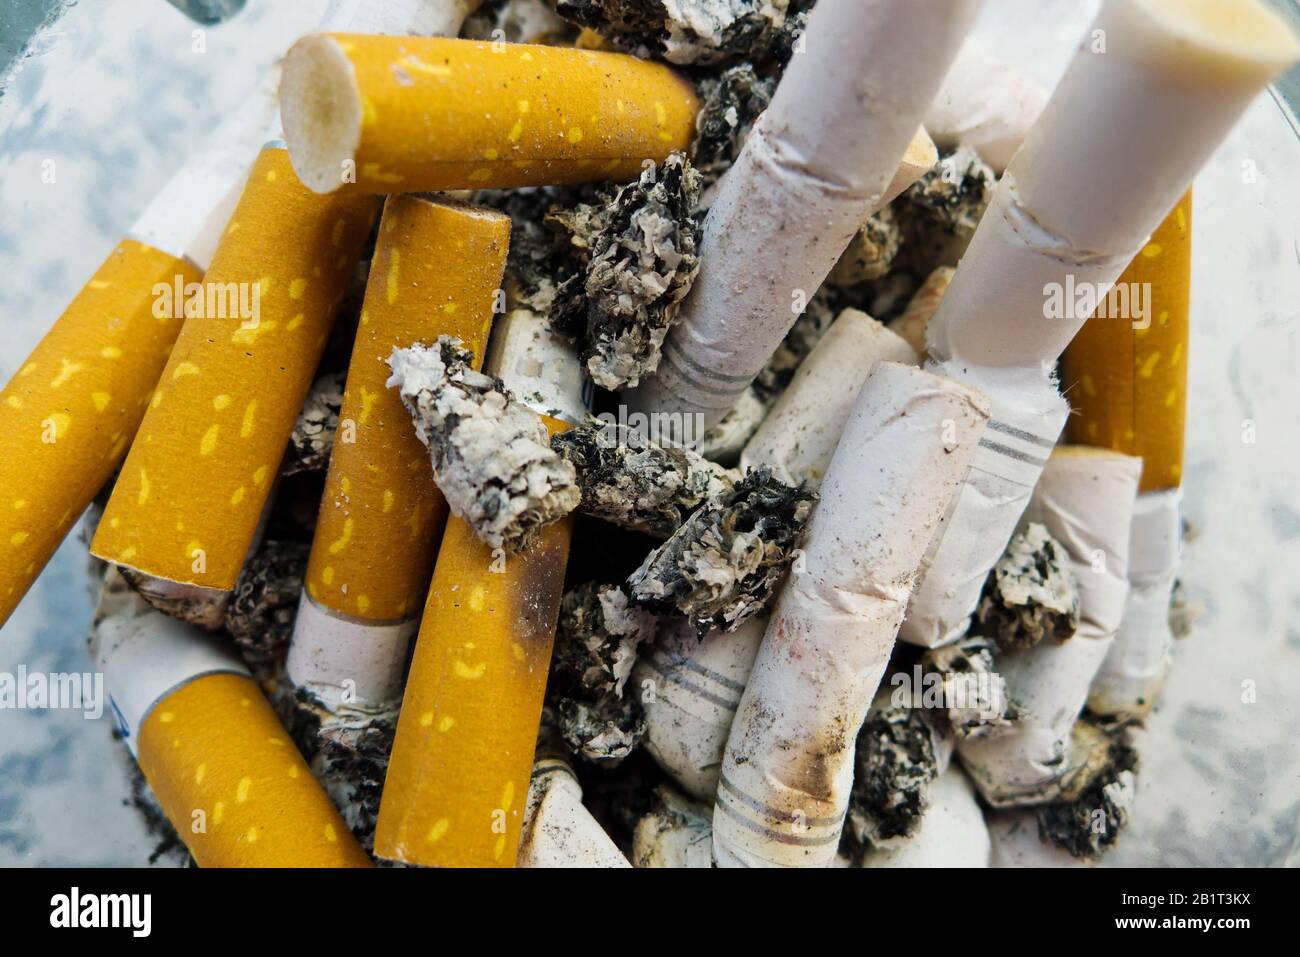 Zigarettenstummel in einem Aschenbecher, Symbolfoto fuer Kettenrauchen und Gesundheitsgefahr Stock Photo